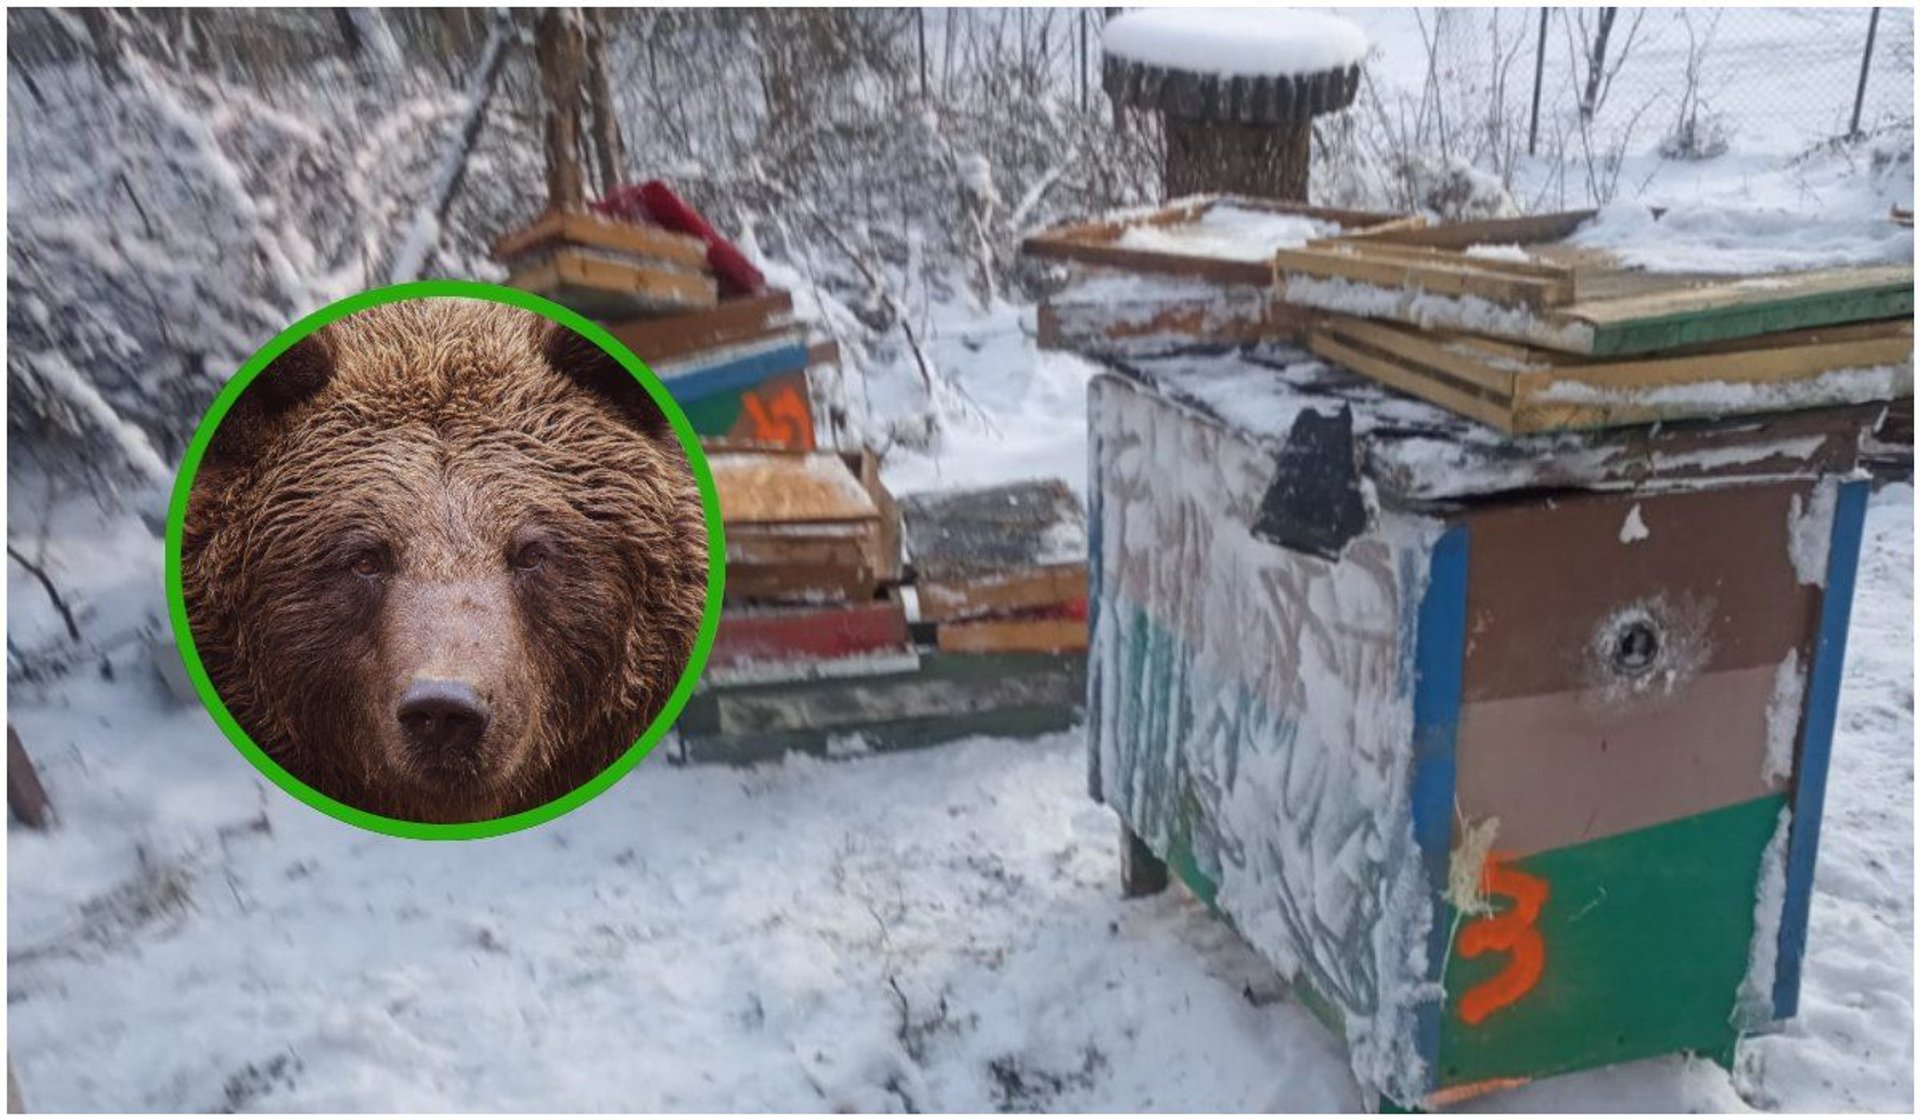 Zniszczenia spowodowane przez niedźwiedzia